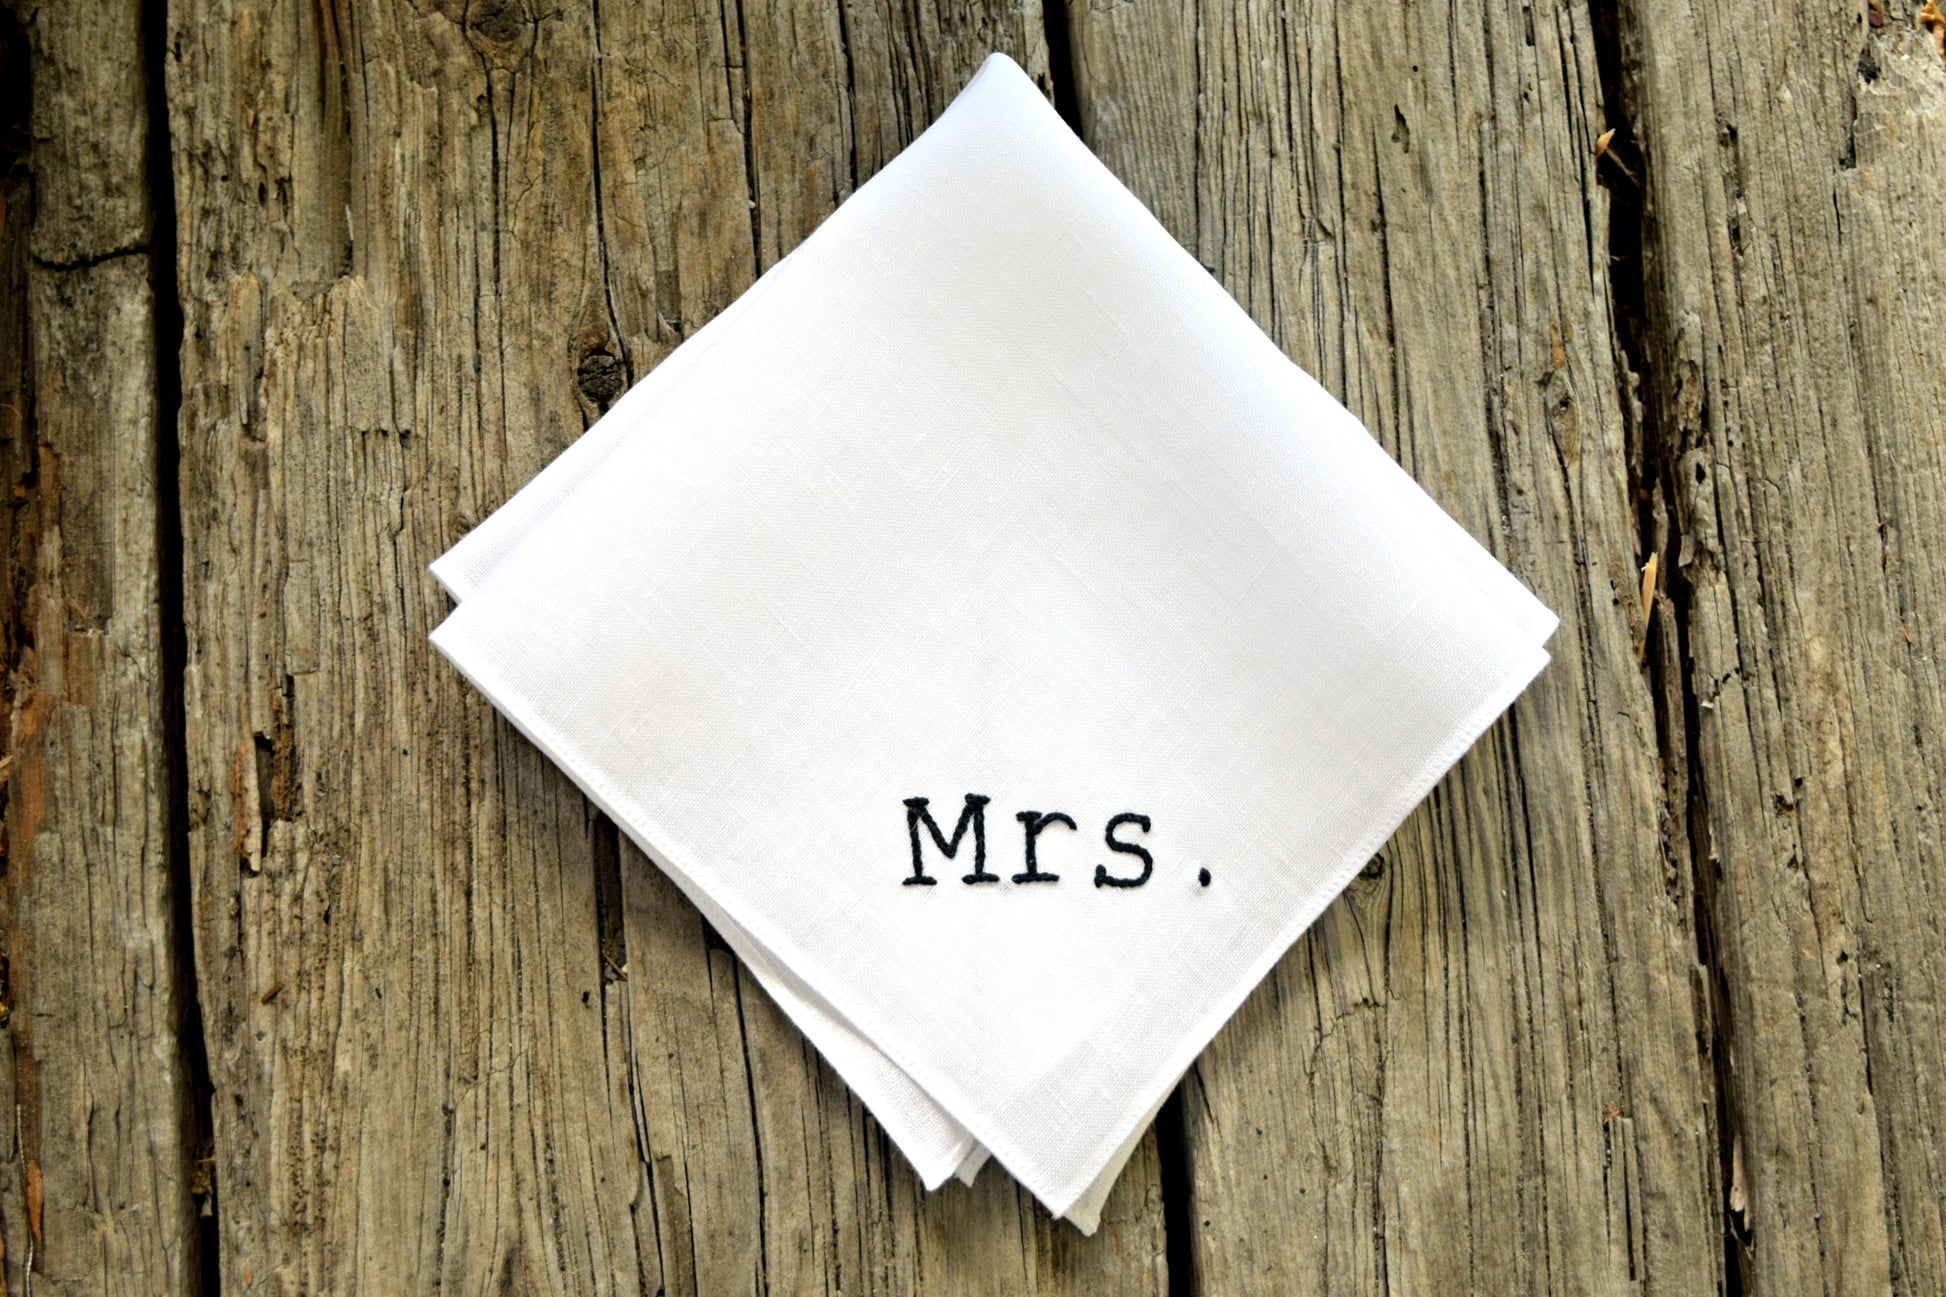 Mrs. new bride handkerchief made of white Irish linen on wood background